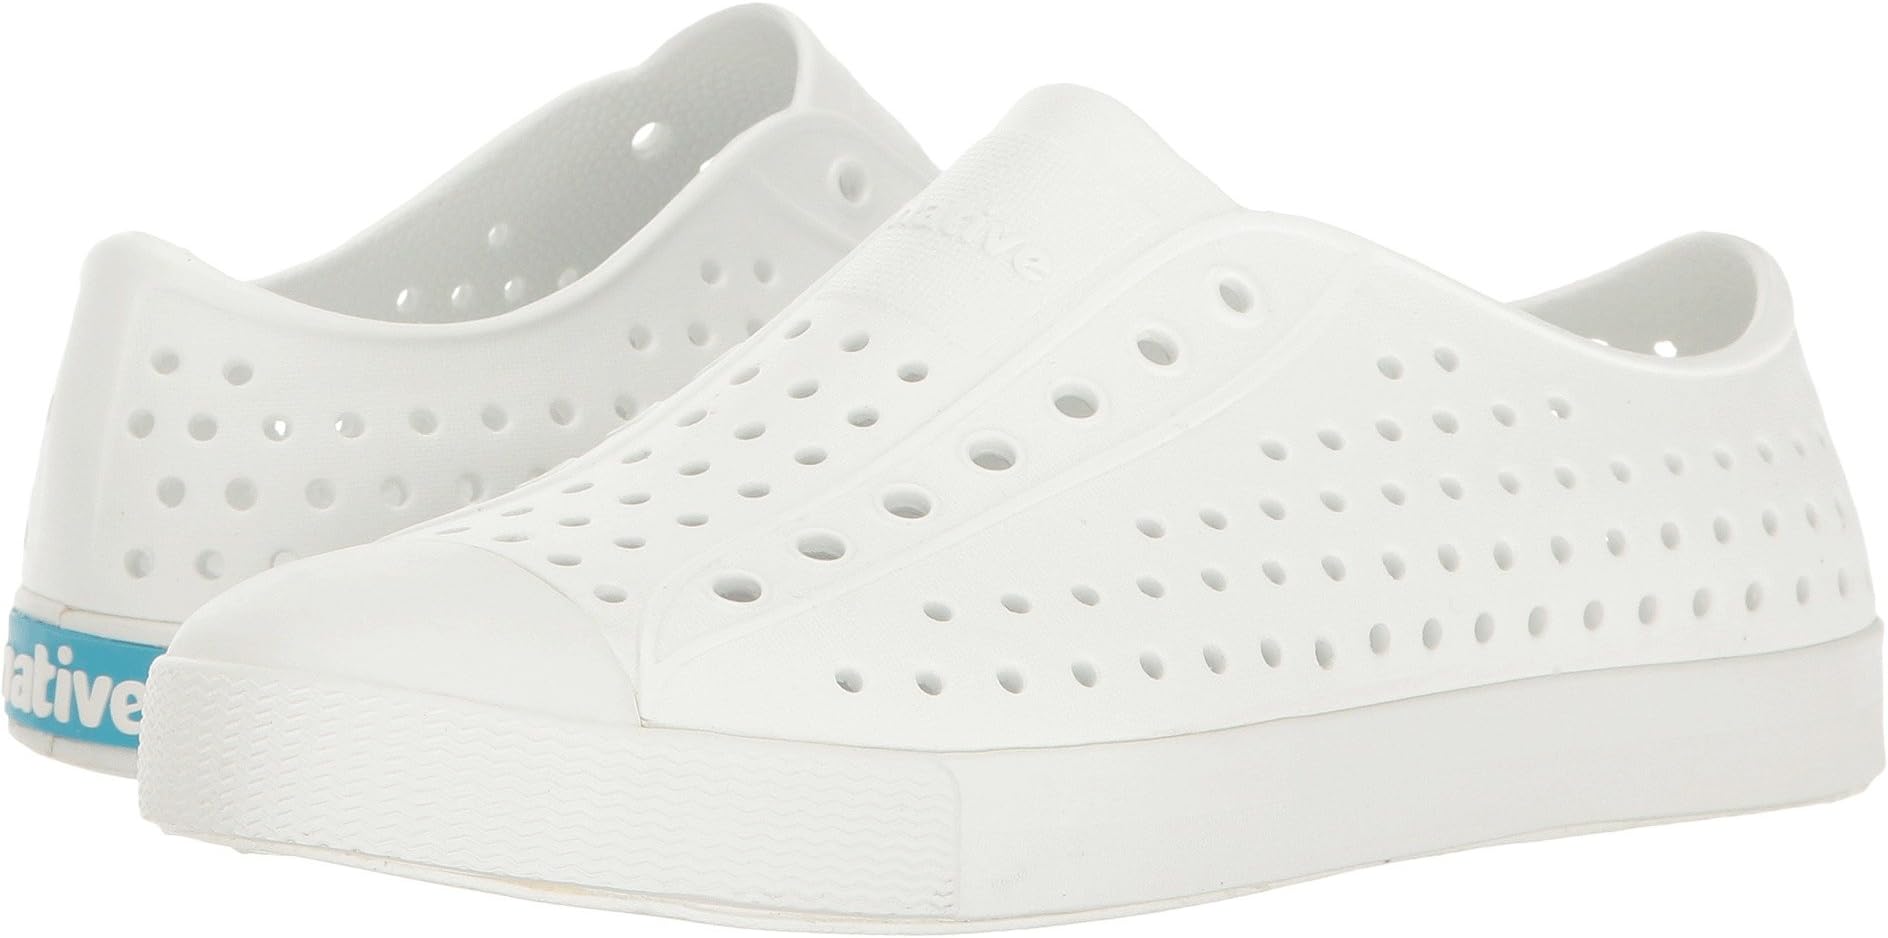 Кроссовки Jefferson Slip-on Sneakers Native Shoes Kids, цвет Shell White/Shell White цена и фото